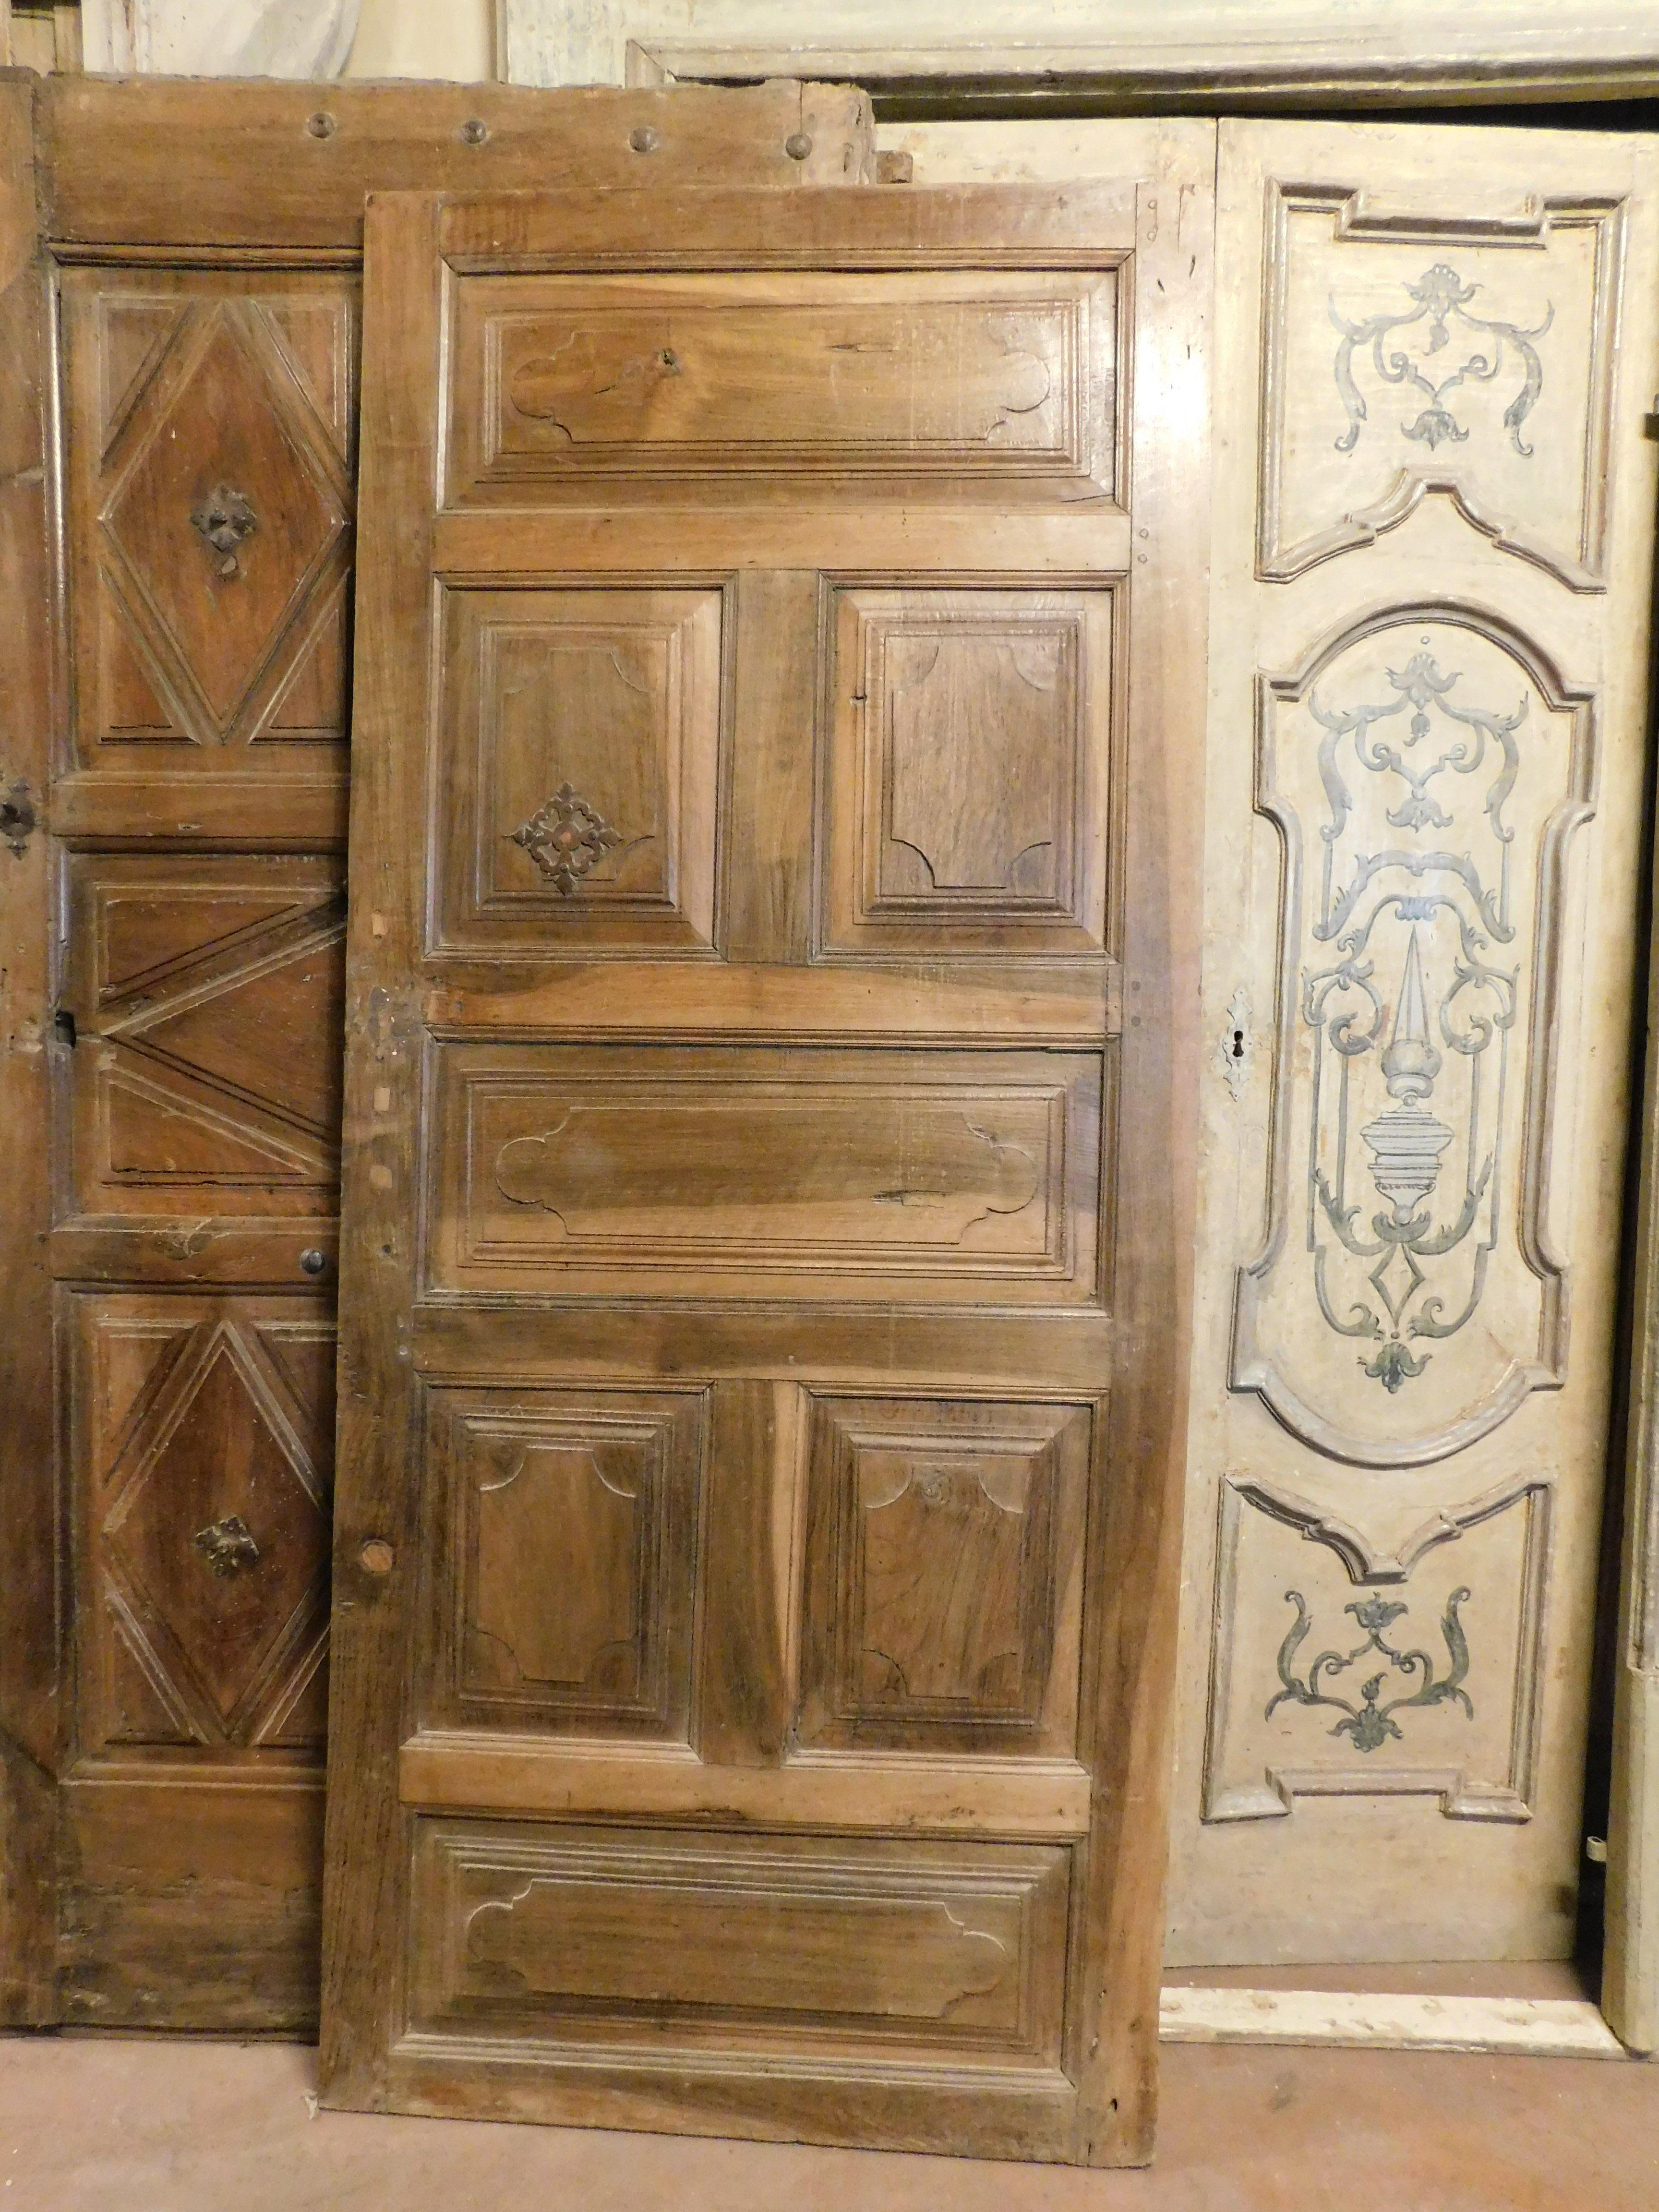 Antike einflügelige Innentür aus wertvollem massivem Nussbaumholz, reich handgeschnitzt mit 7 originalen Paneelen und Beschlägen, glatte Rückseite, handgefertigt von einem norditalienischen Kunsthandwerker aus dem 18. Jahrhundert, Maße B 87 cm x H